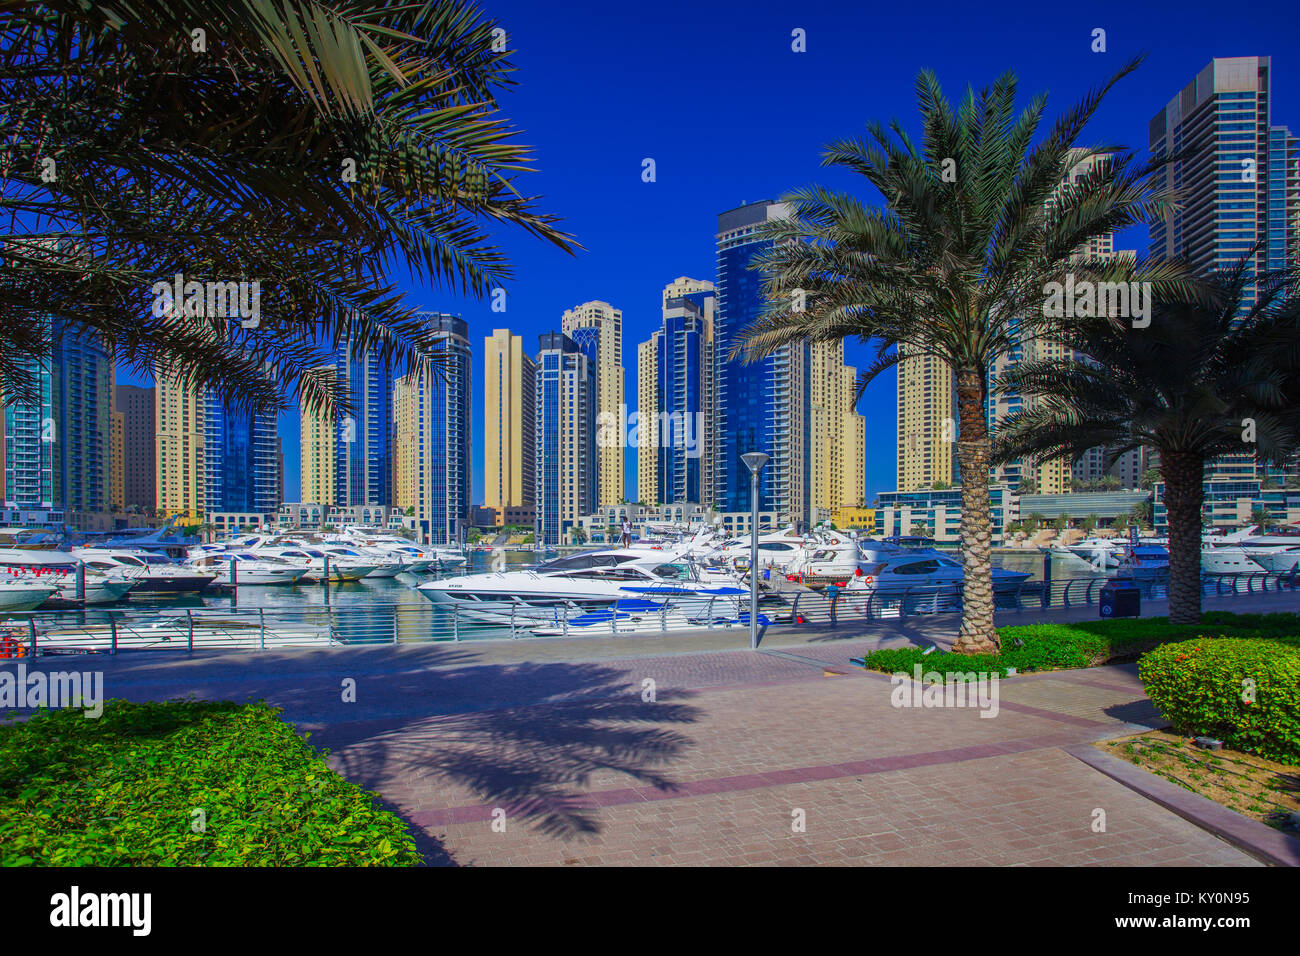 Das stadtbild von Dubai an einem sonnigen Tag. Wolkenkratzer am klaren, blauen Himmel Hintergrund. Palmen in Luxus in Dubai. Stockfoto